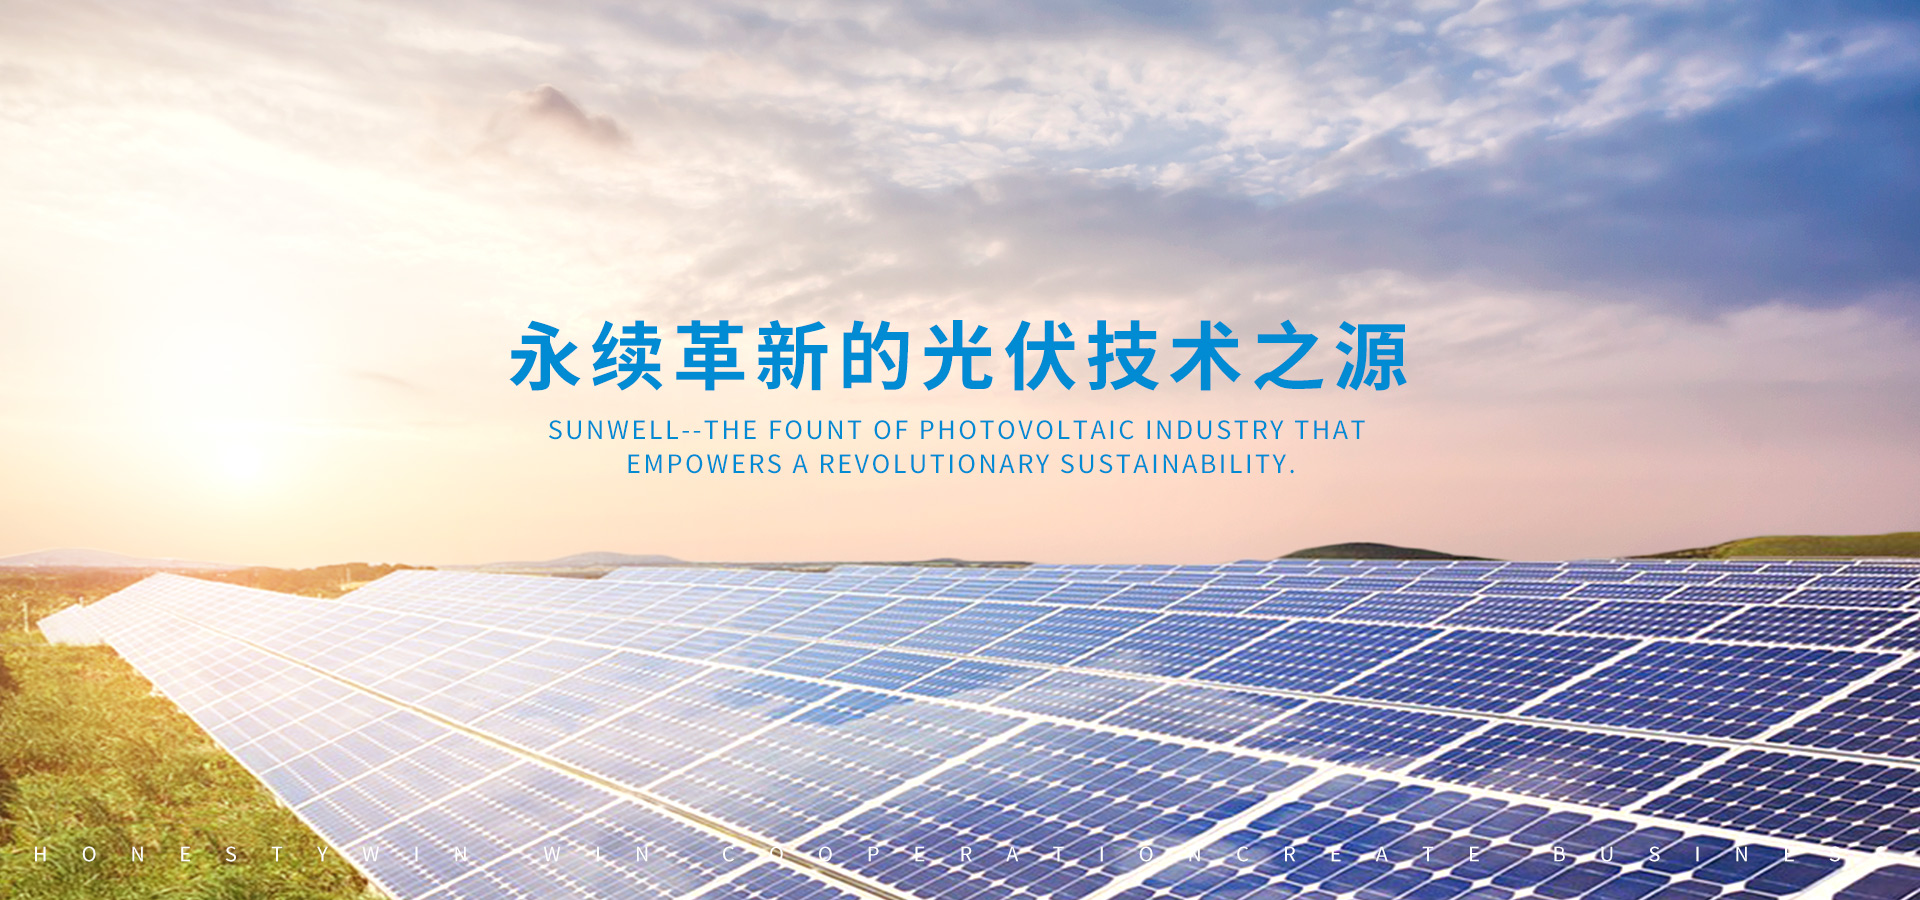 蘇州太陽井新能源有限公司